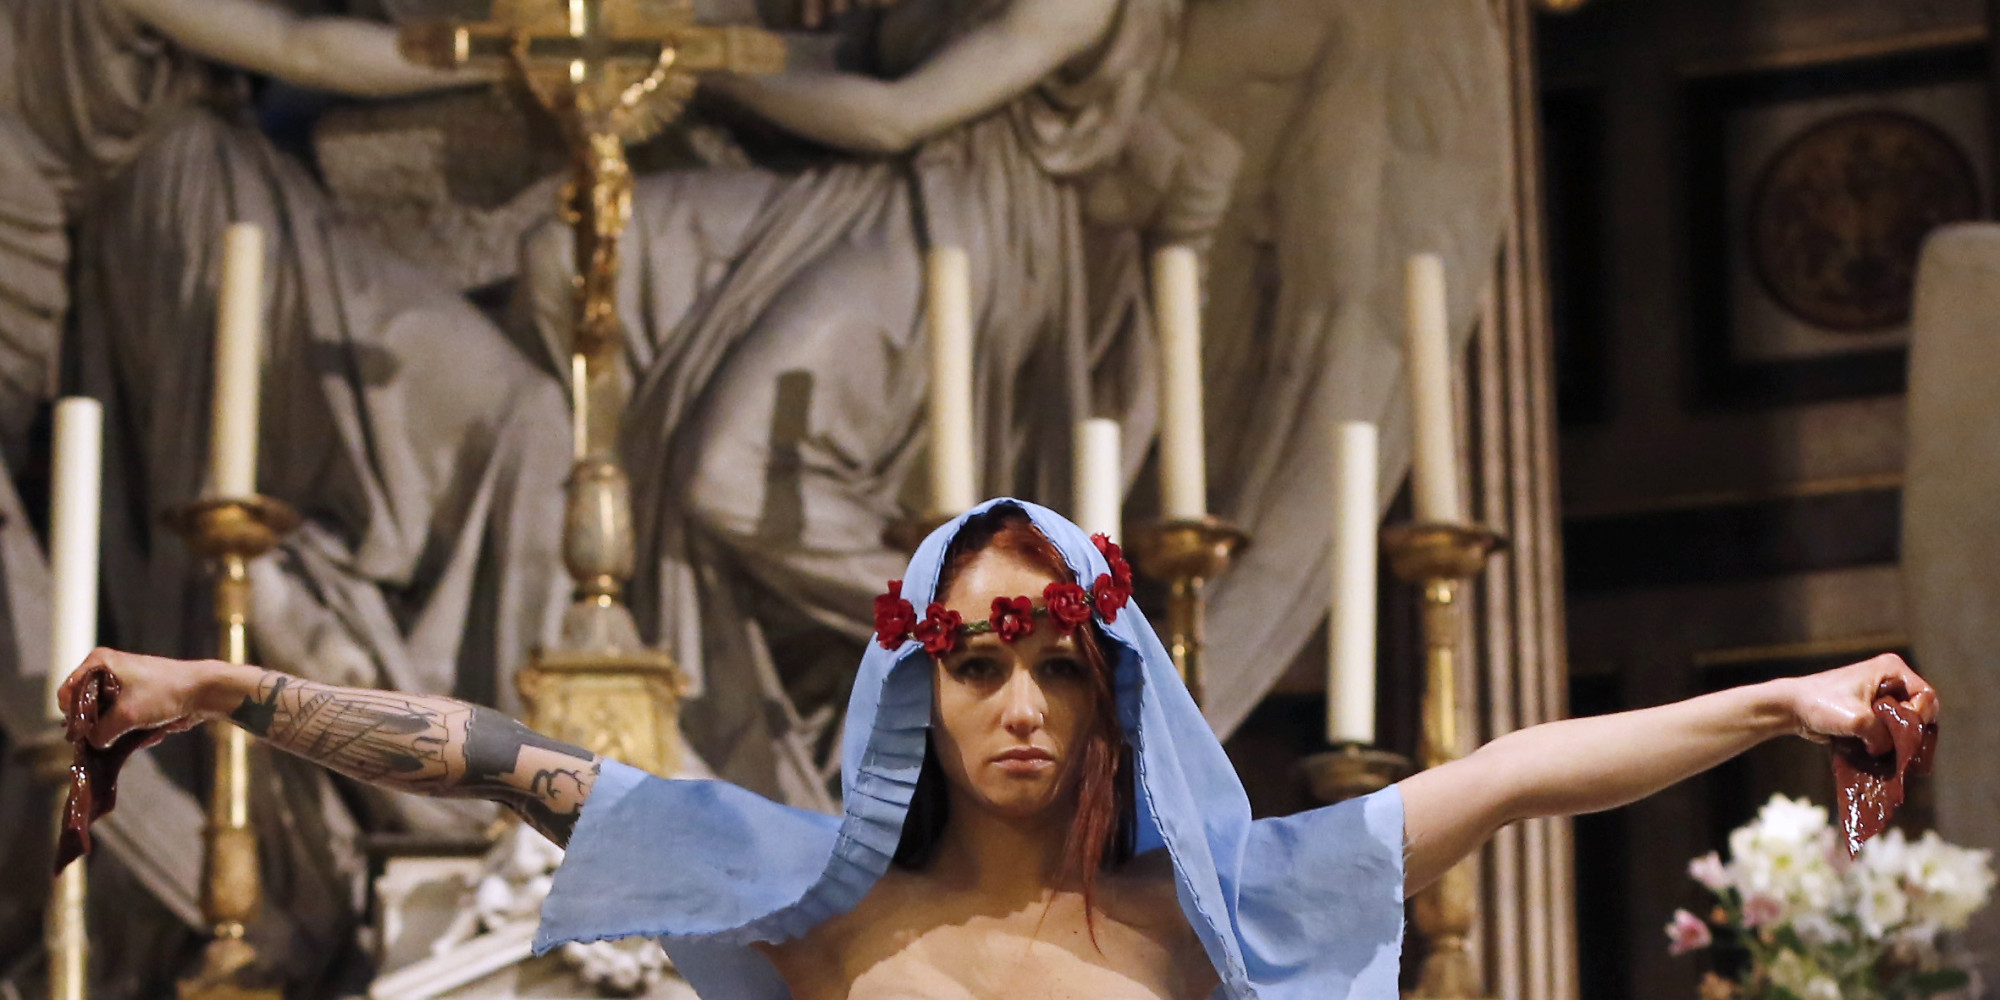 http://i.huffpost.com/gen/1526398/thumbs/o-FEMEN-MADELEINE-facebook.jpg